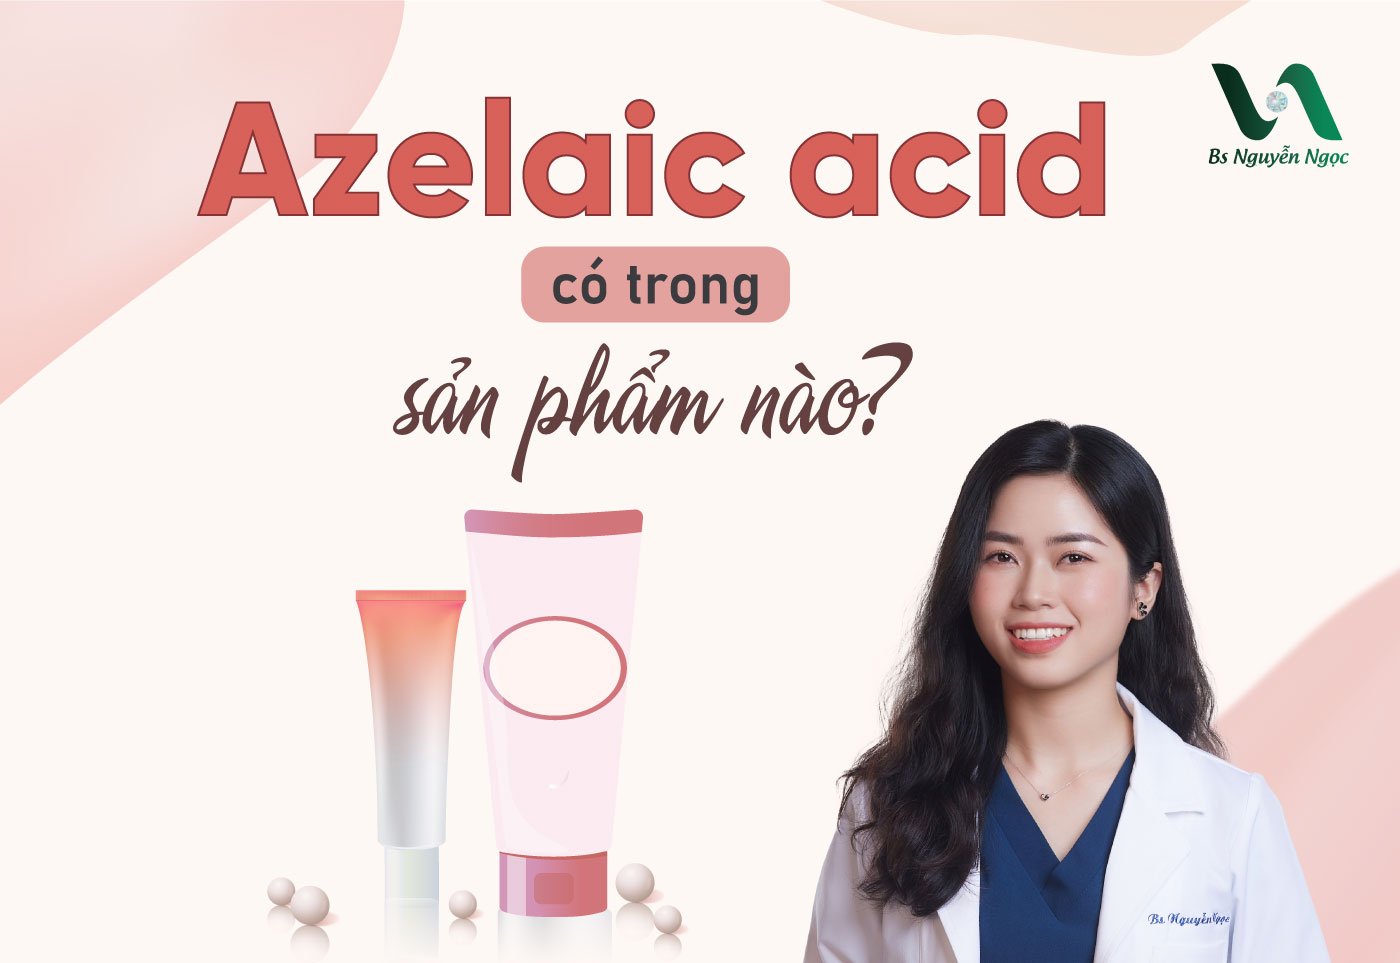 Azelaic acid có trong sản phẩm nào?